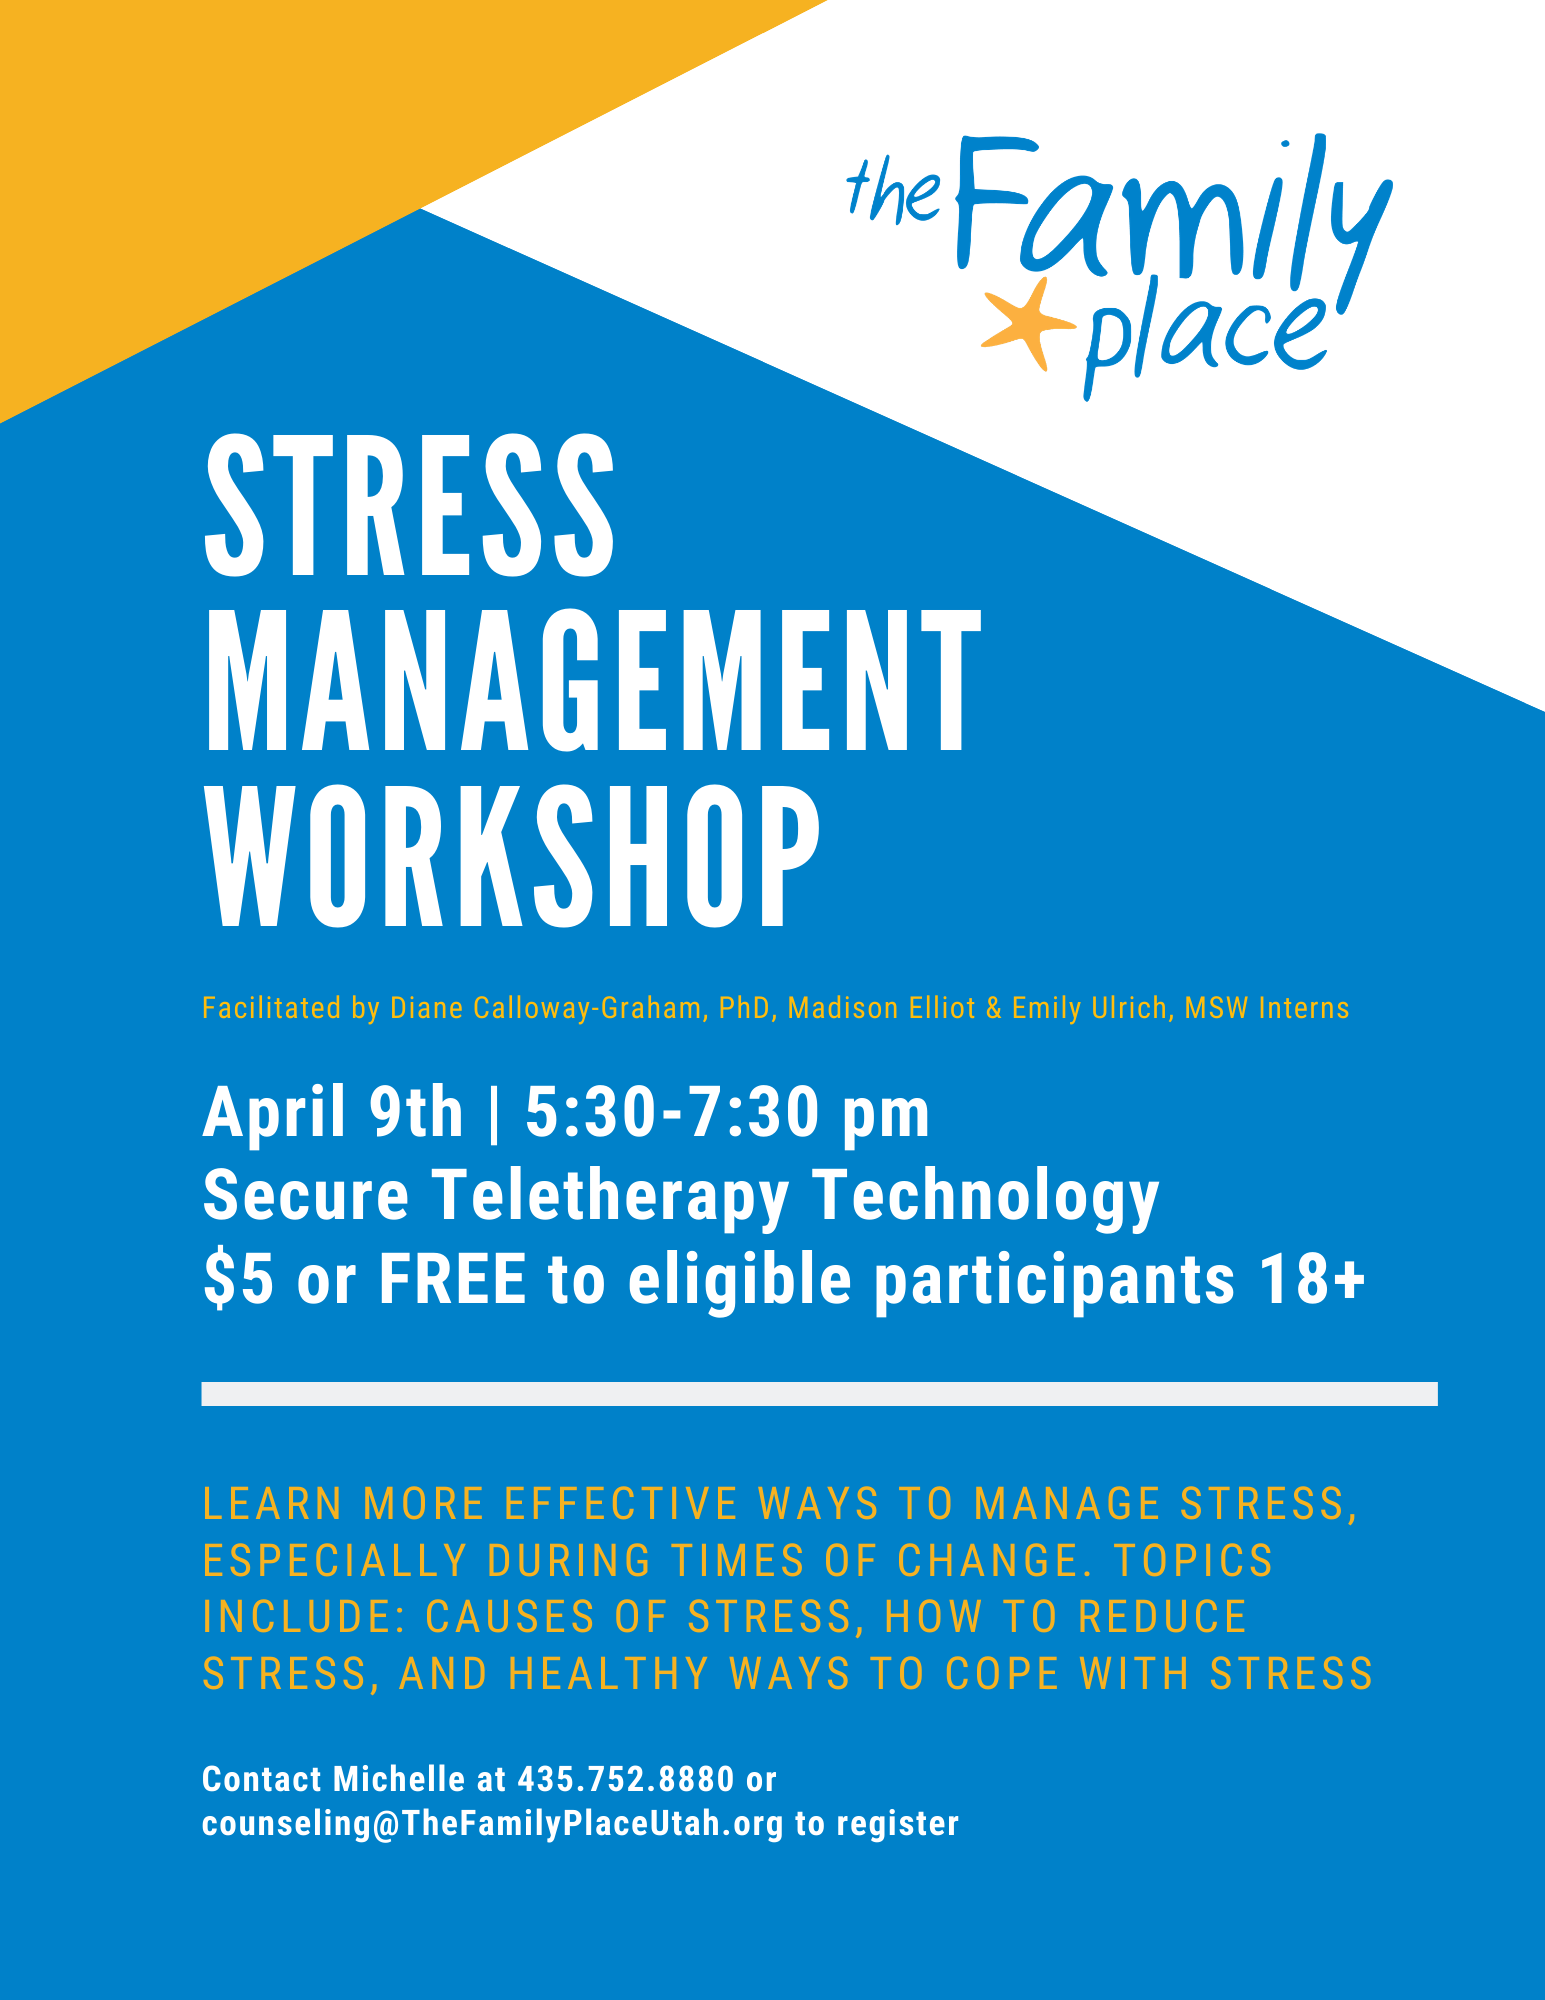 Stress reduction workshops